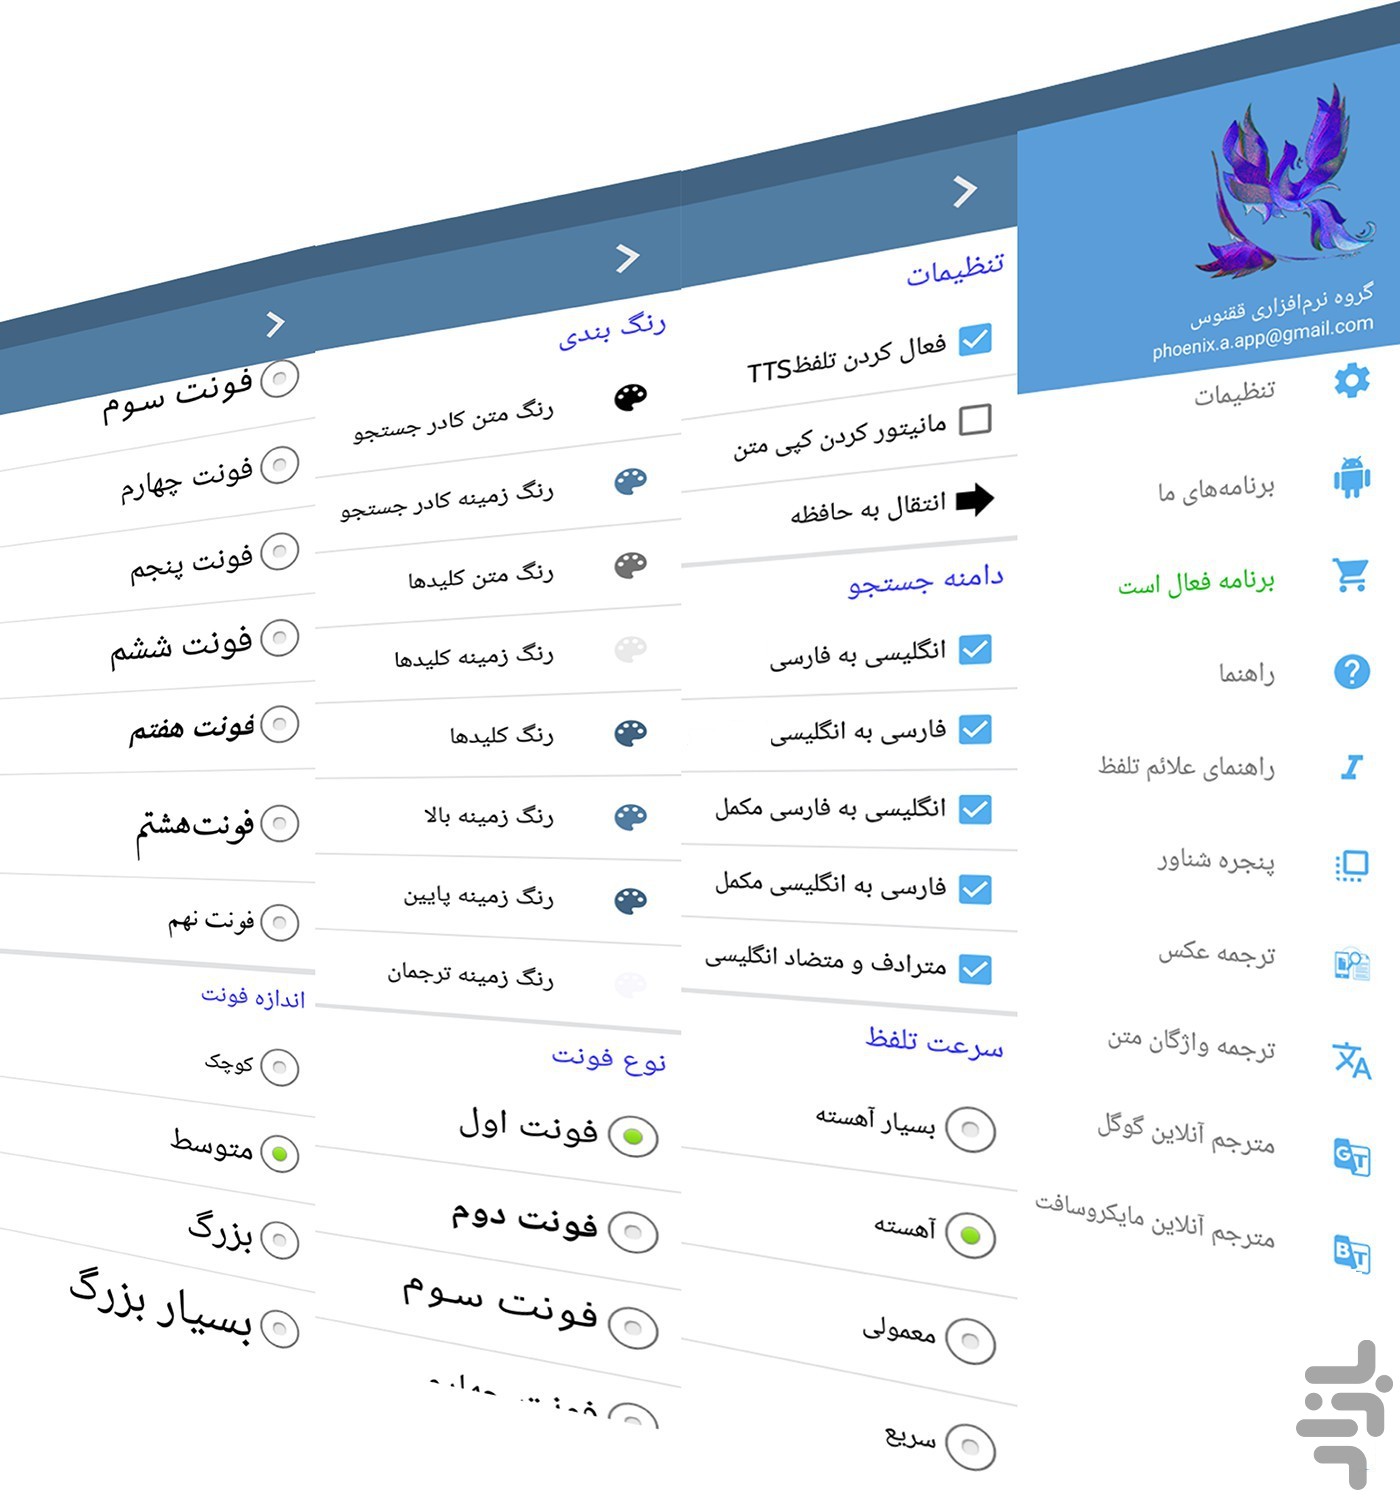 ترجمه آنلاین انگلیسی به فارسی همراه با تلفظ
